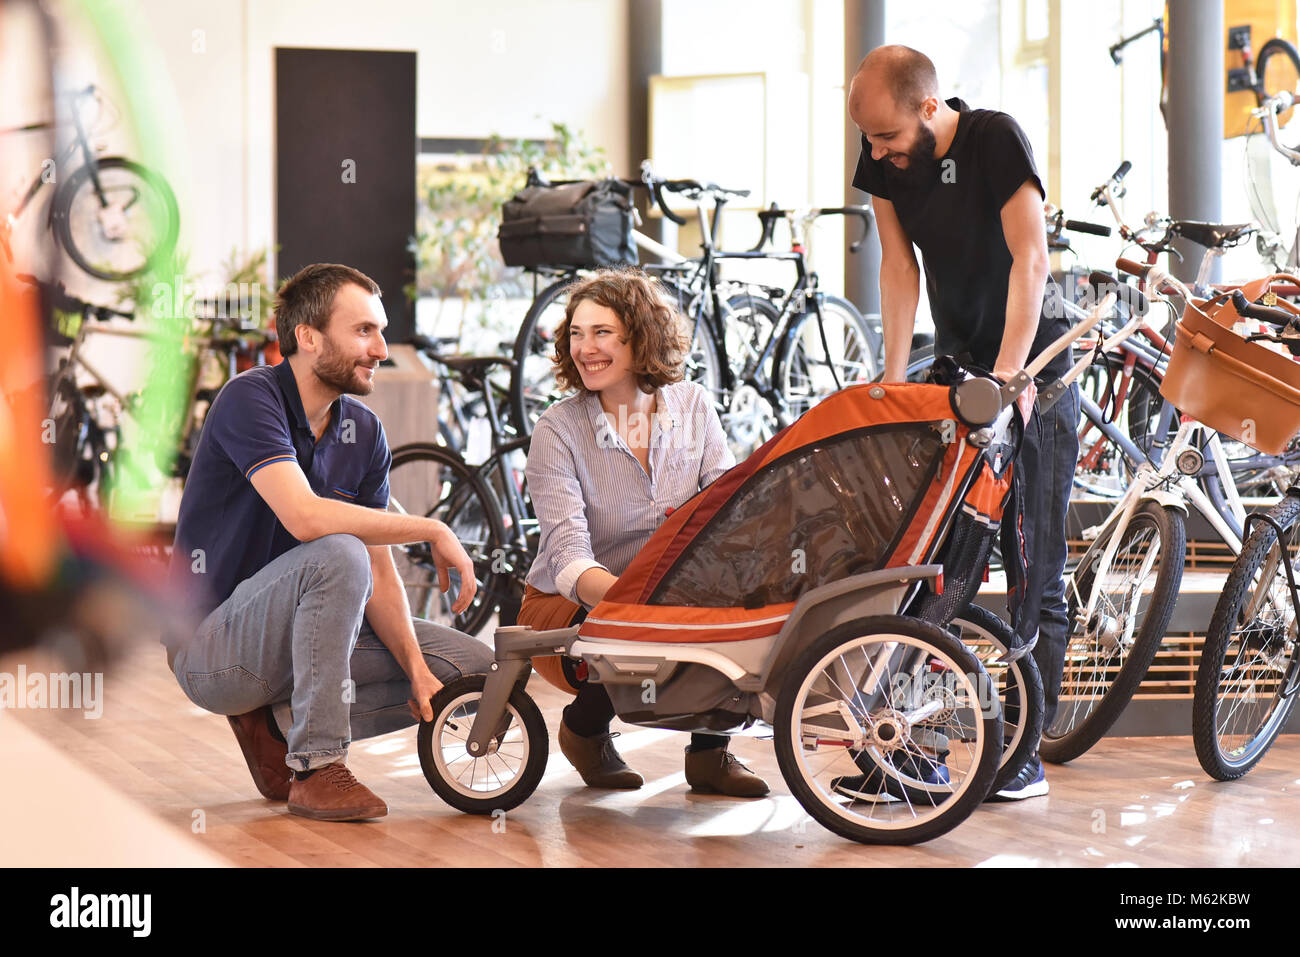 Kunden und Händler im Fahrrad Shop - Kauf und Reparatur von Fahrrädern - Kundendienst Stockfoto